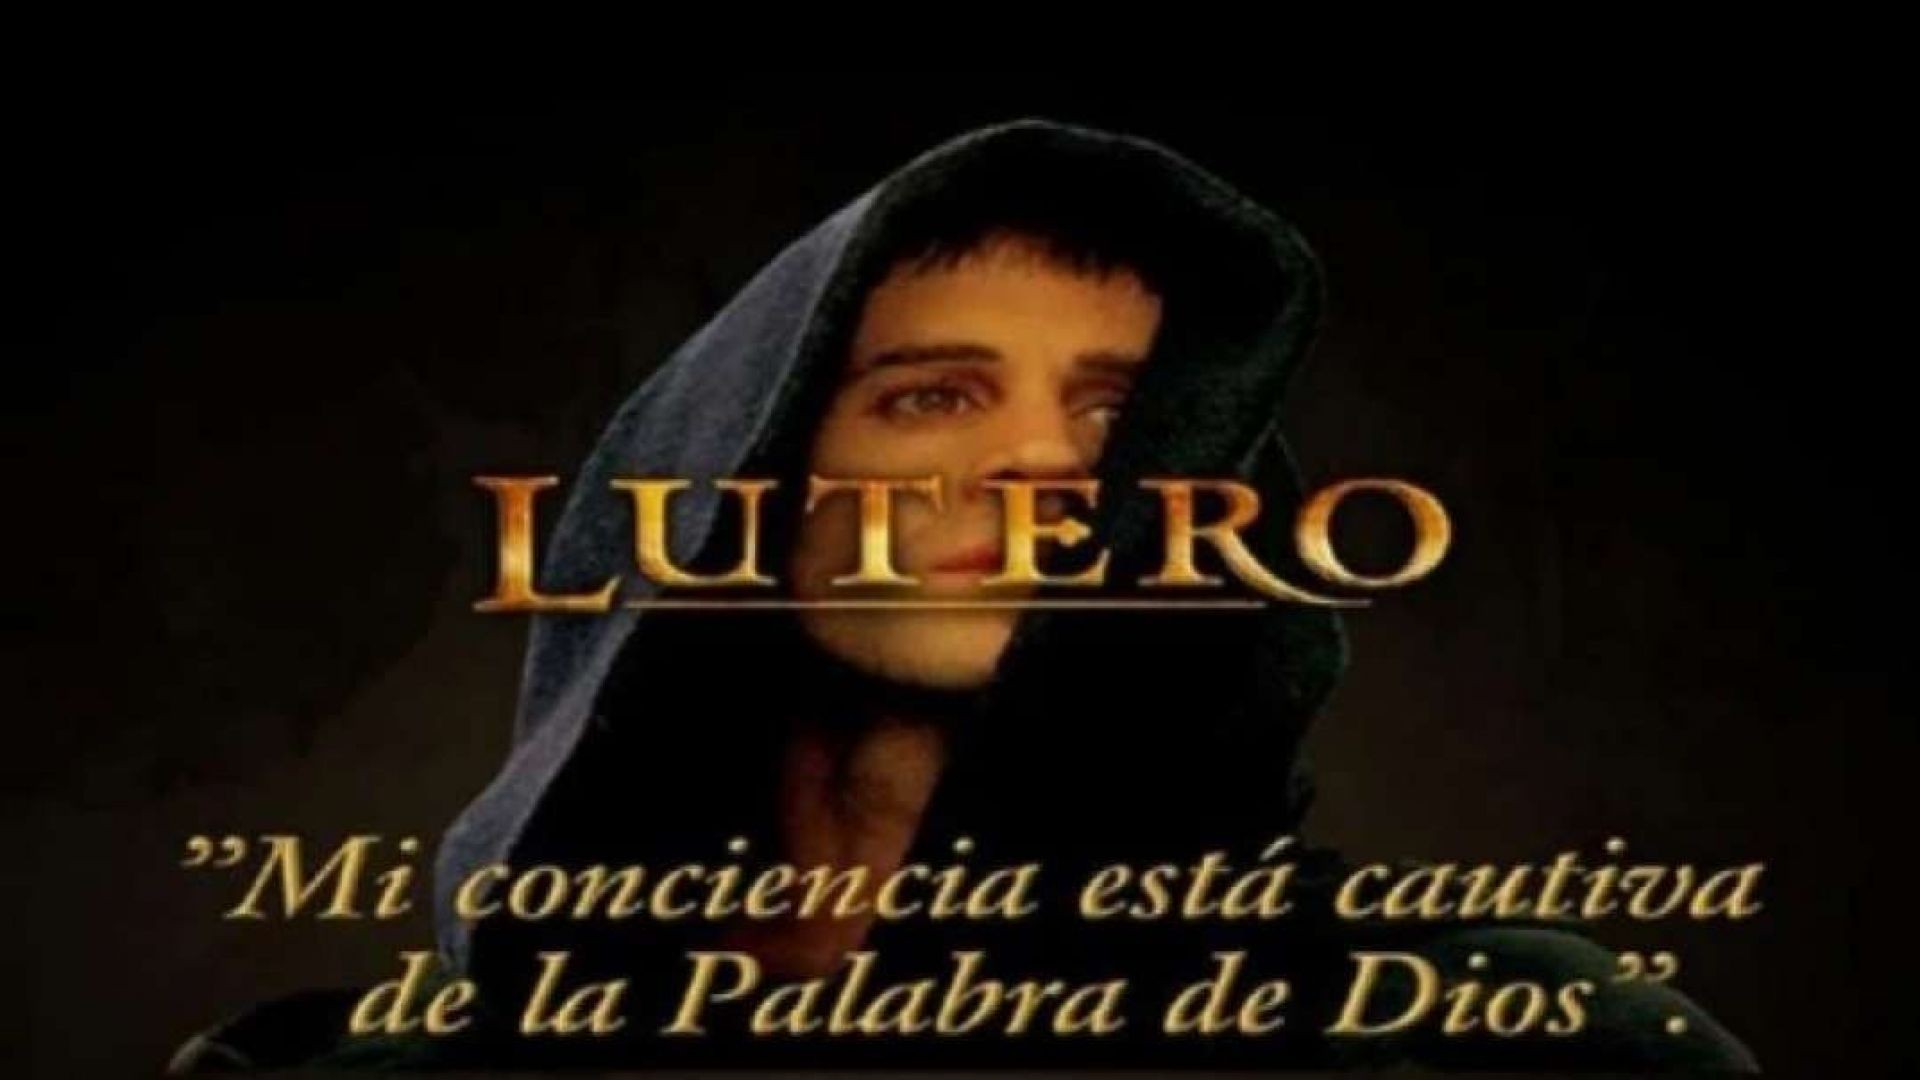 Martin Lutero | Pelicula - Reforma del Siglo XVI